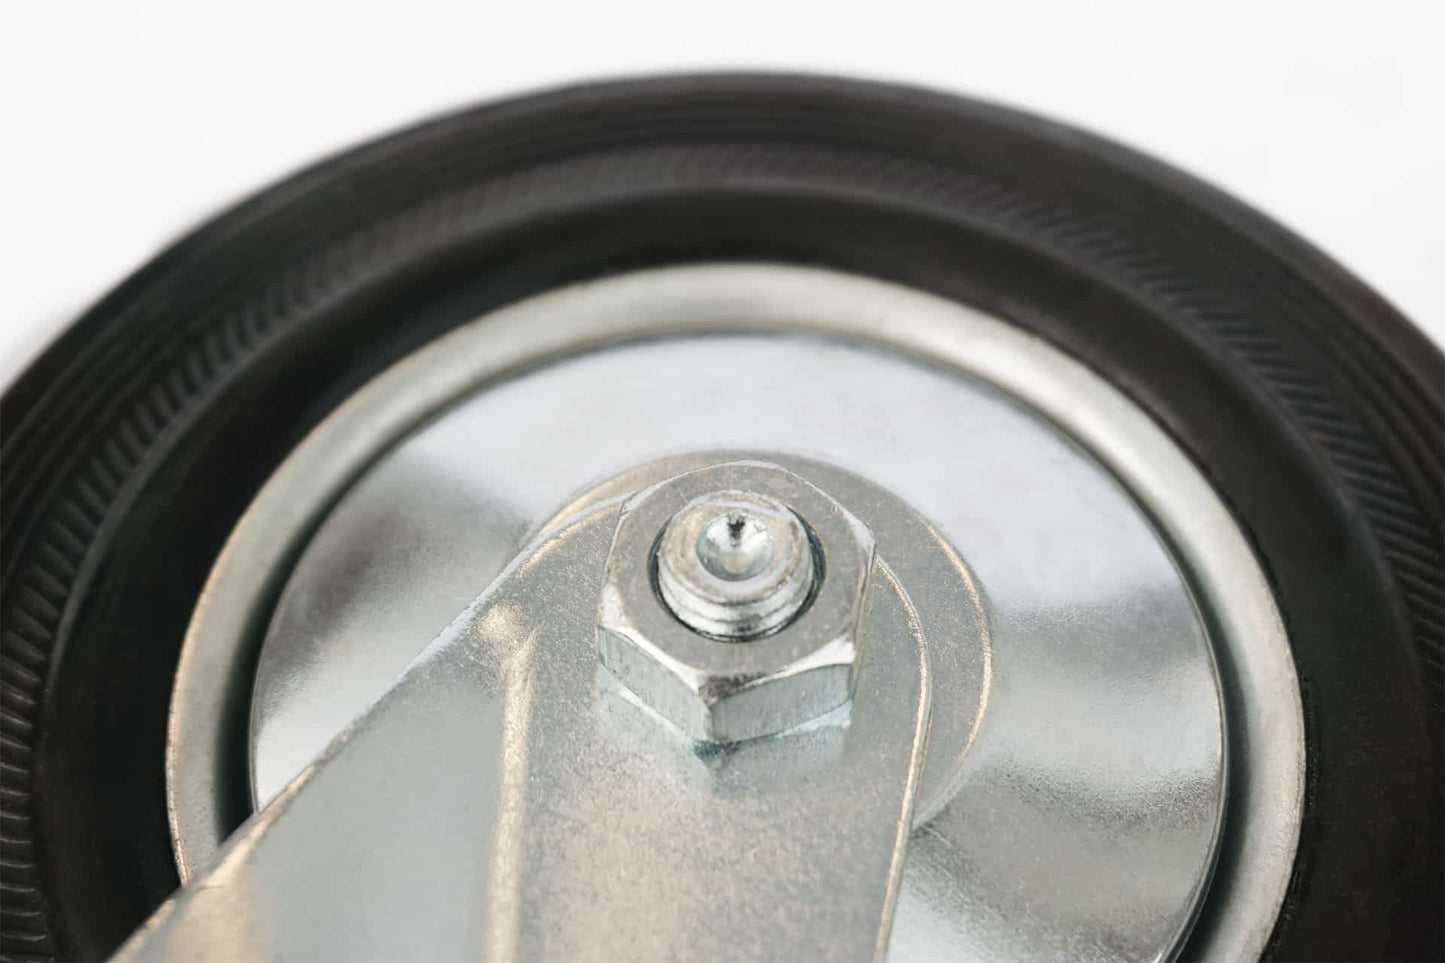 Ø 100 mm | Zestaw kołowy obrotowy bez hamulca: metal guma, płyta mocująca, łożysko wałeczkowe, nośność 50 kg | 4001-100 - śruba